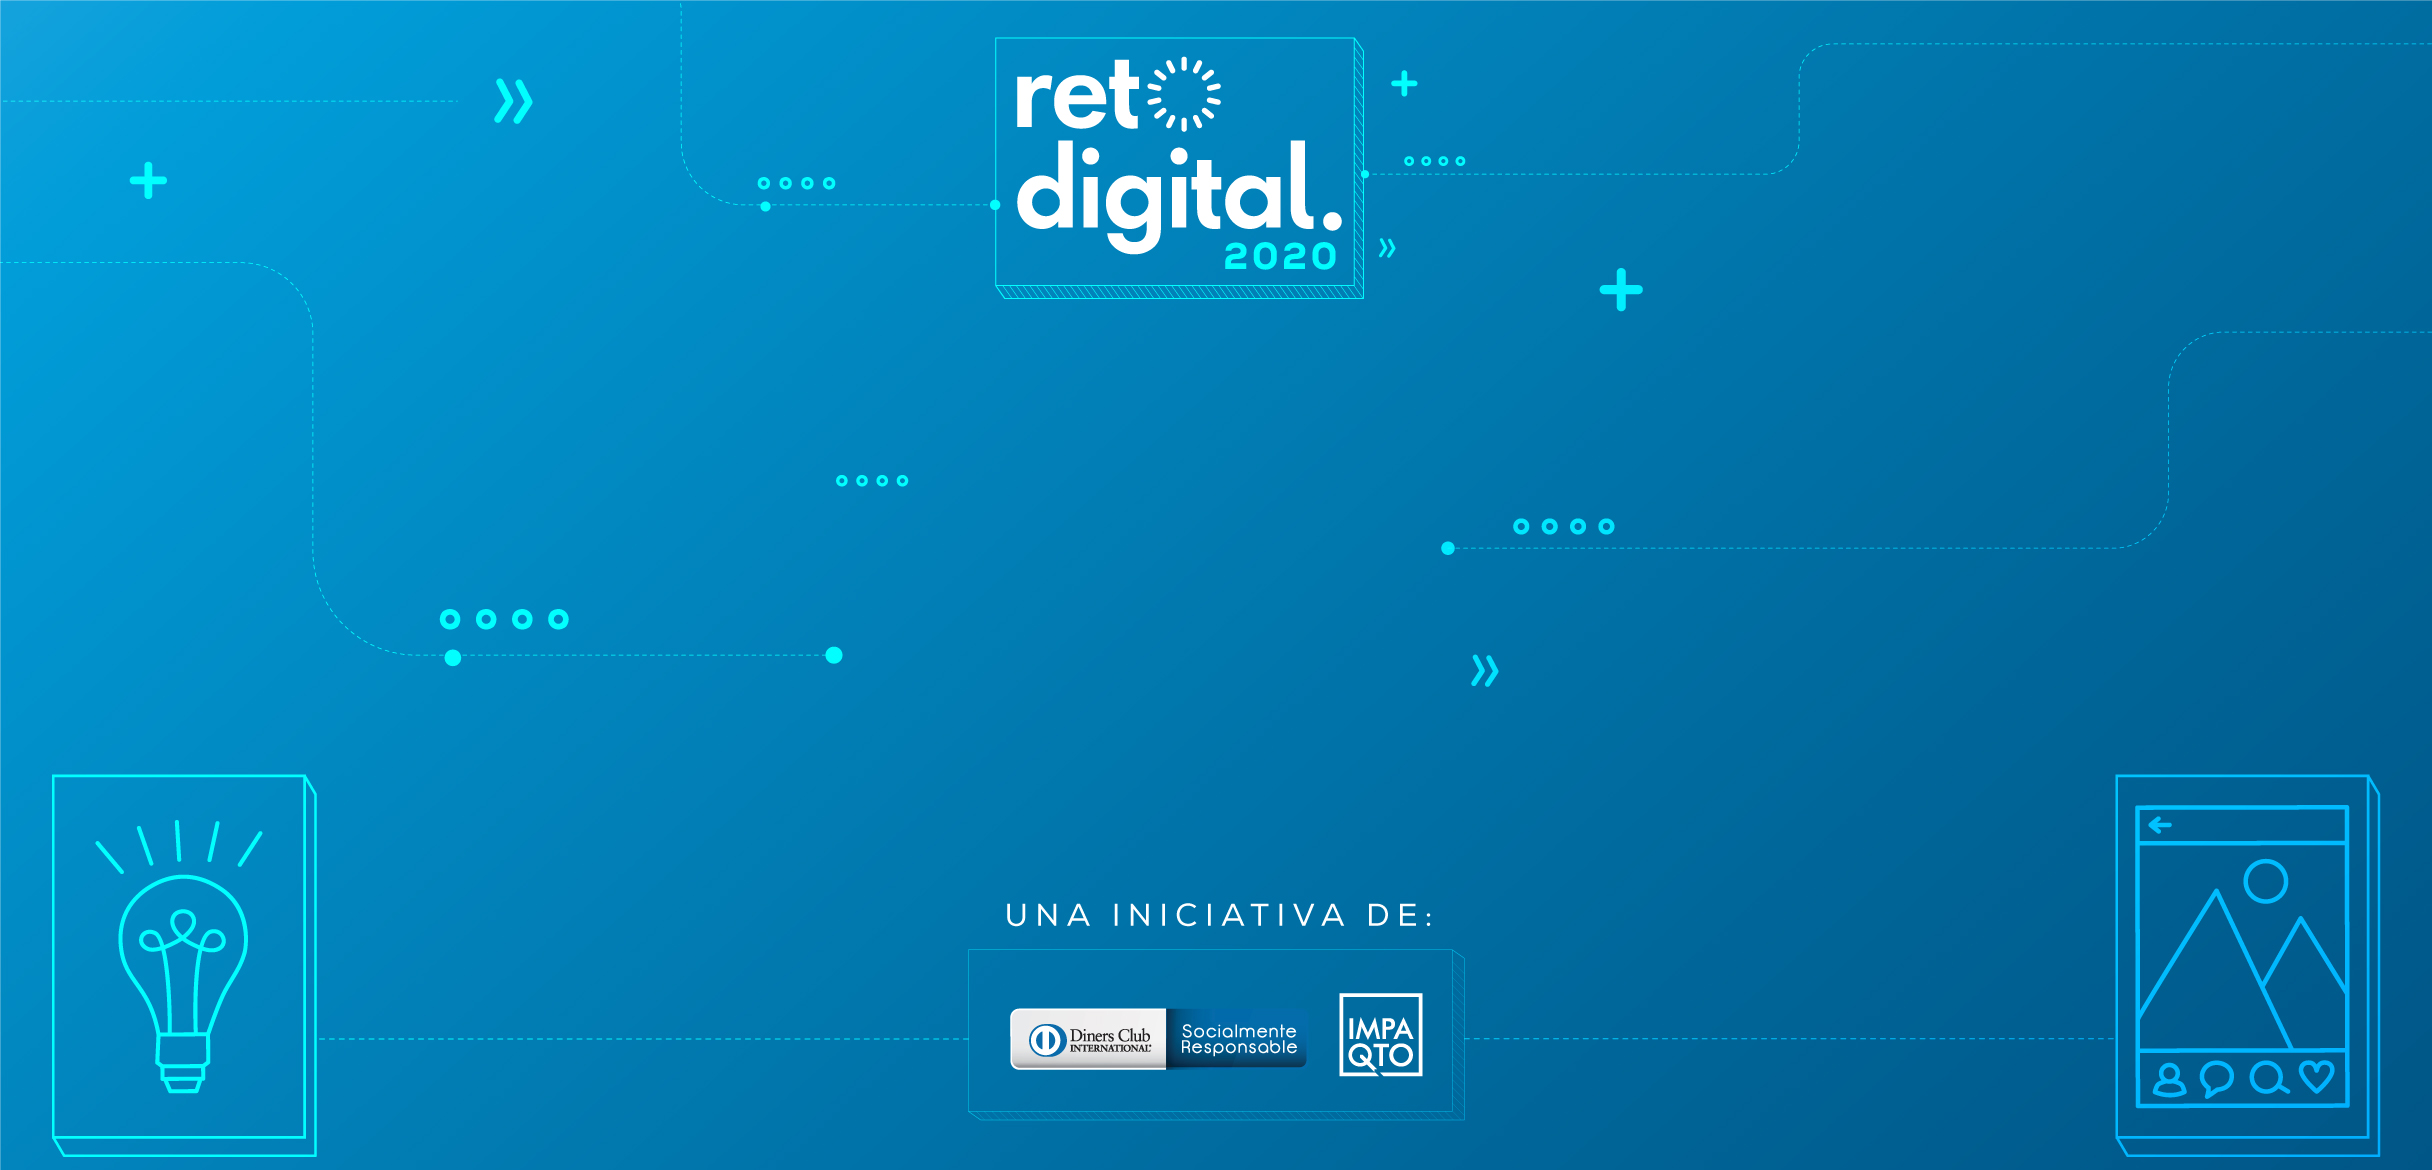 Reto Digital busca a los mejores emprendimientos en E-Commerce y soluciones digitales innovadoras